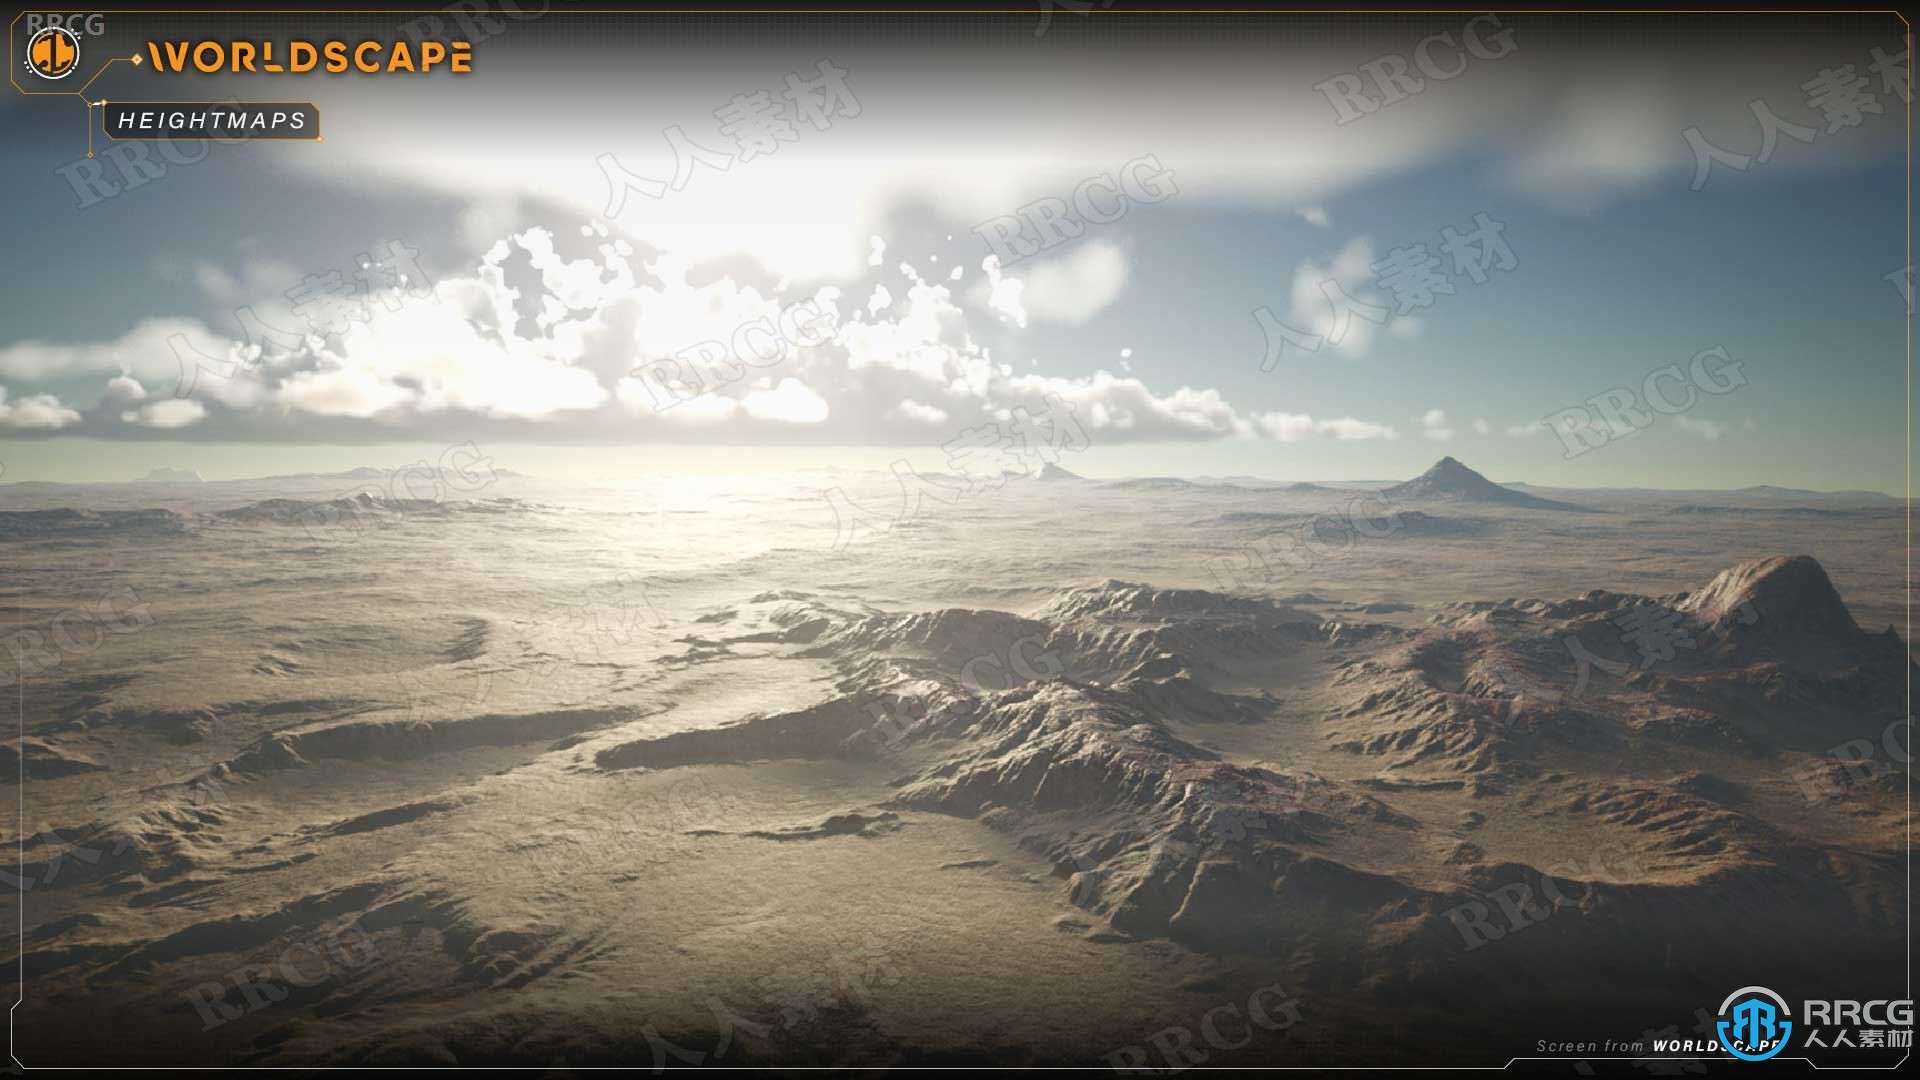 行星世界景观无限创建Unreal Engine游戏素材资源